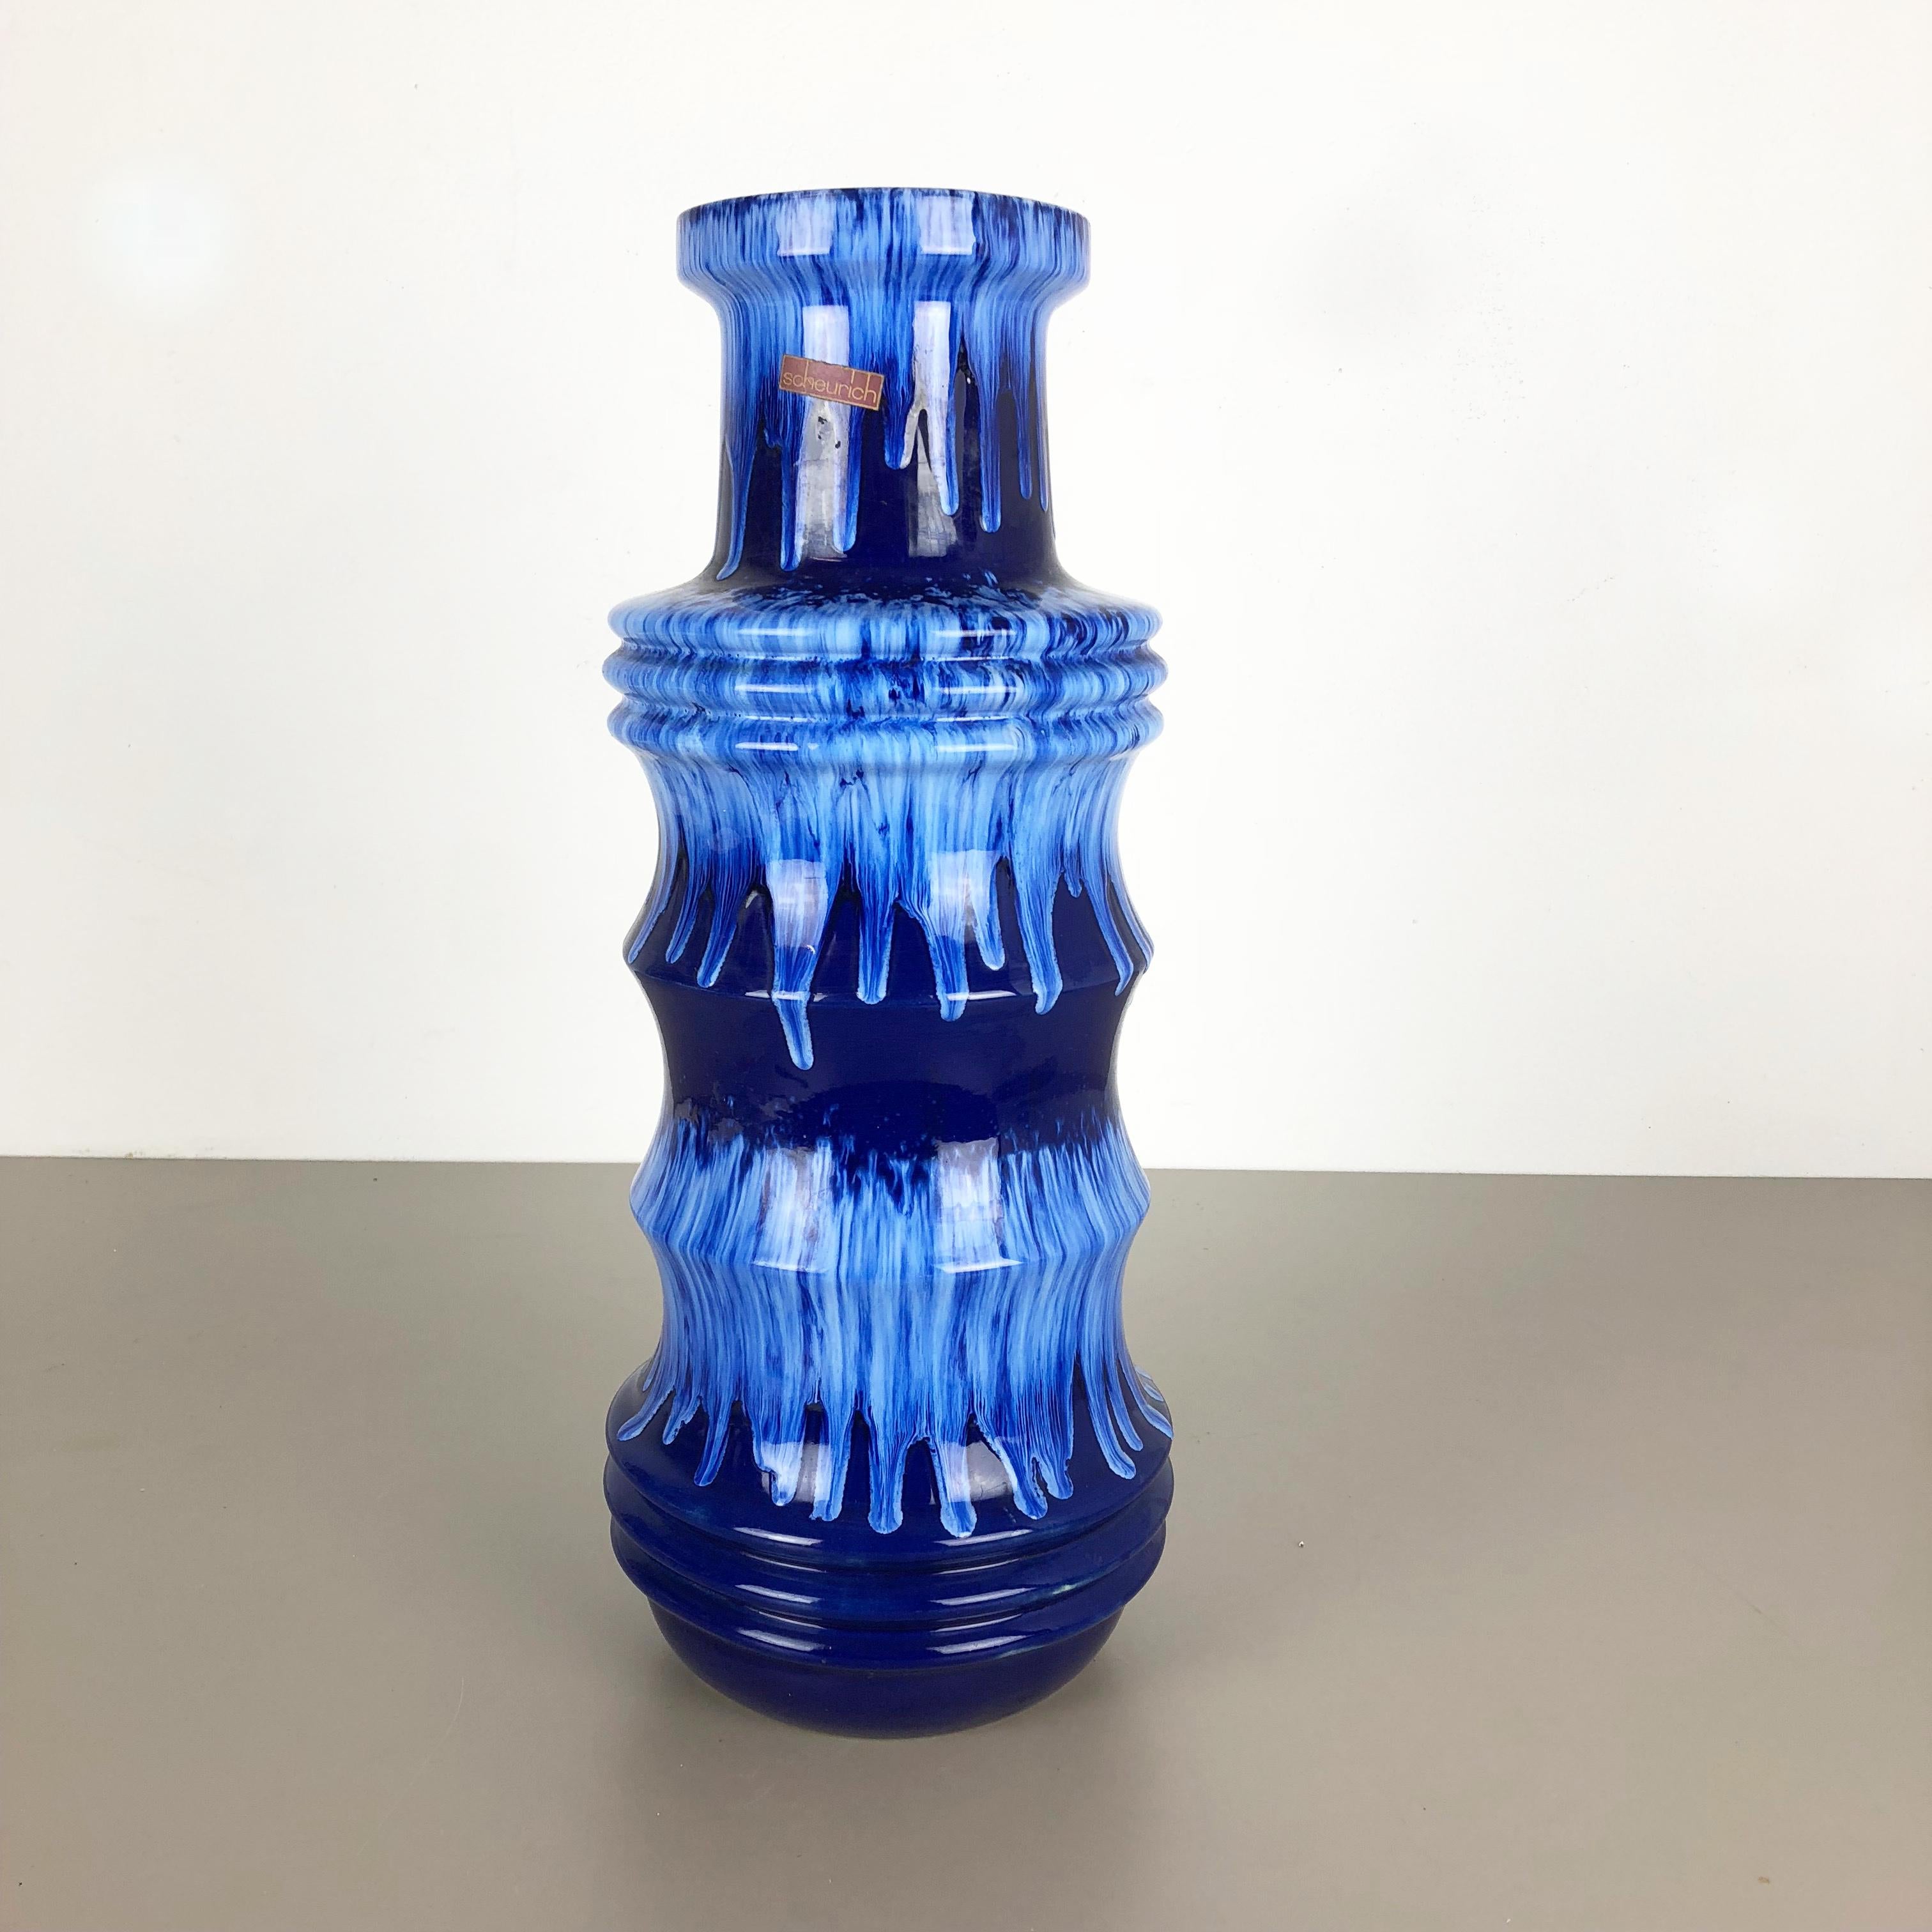 Artikel:

Fat Lava Art Vase extra große Version


Modell: 266-53


Produzent:

Scheurich, Deutschland



Jahrzehnt:

1970er




Diese originelle Vintage-Vase wurde in den 1970er Jahren in Deutschland hergestellt. Sie ist aus